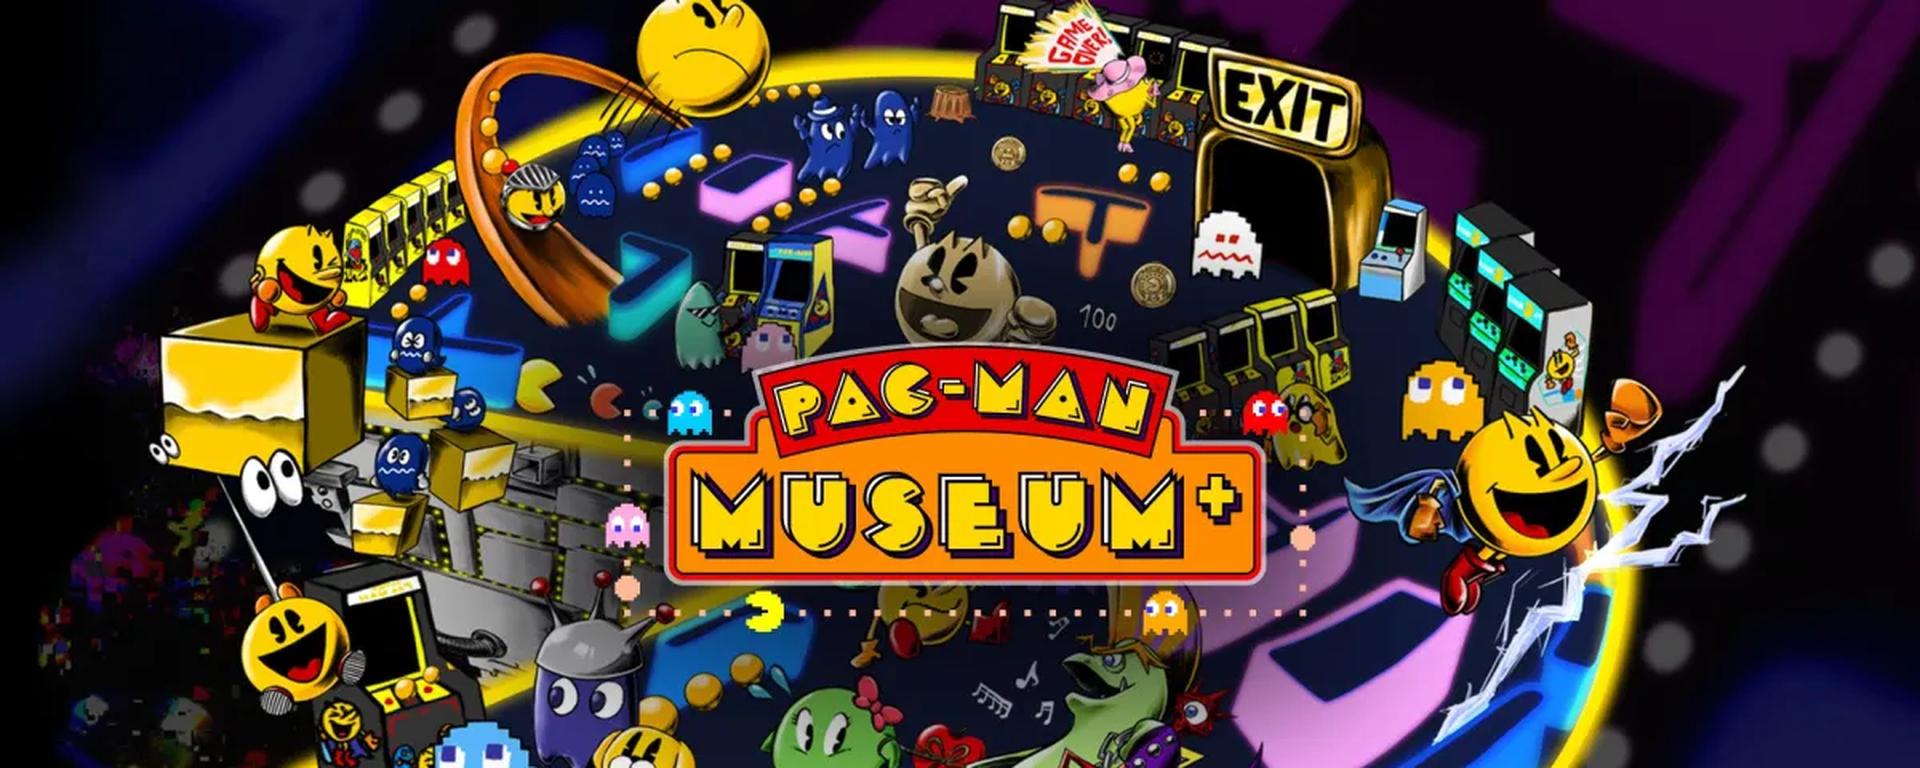 Pac-Man Museum+ (REVIEW): Pac-Man vuelve a rodar en el mundo de los videojuegos 